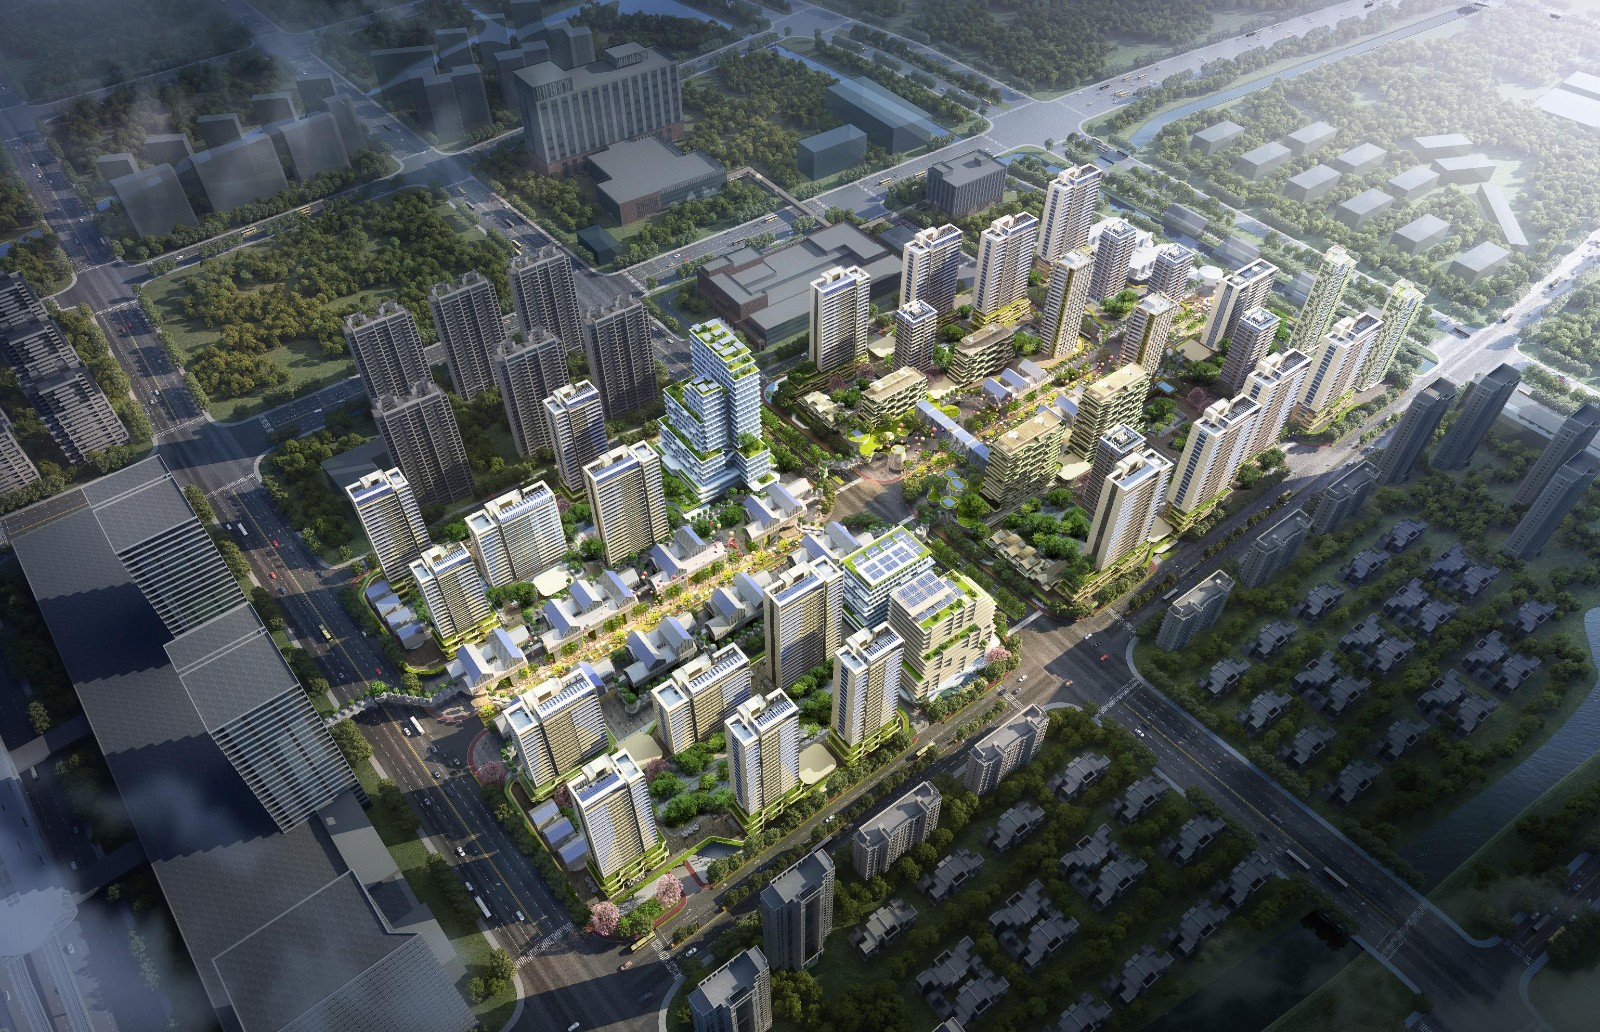 中建二局华东公司承建的上海嘉定未来城市项目正式开工.jpg